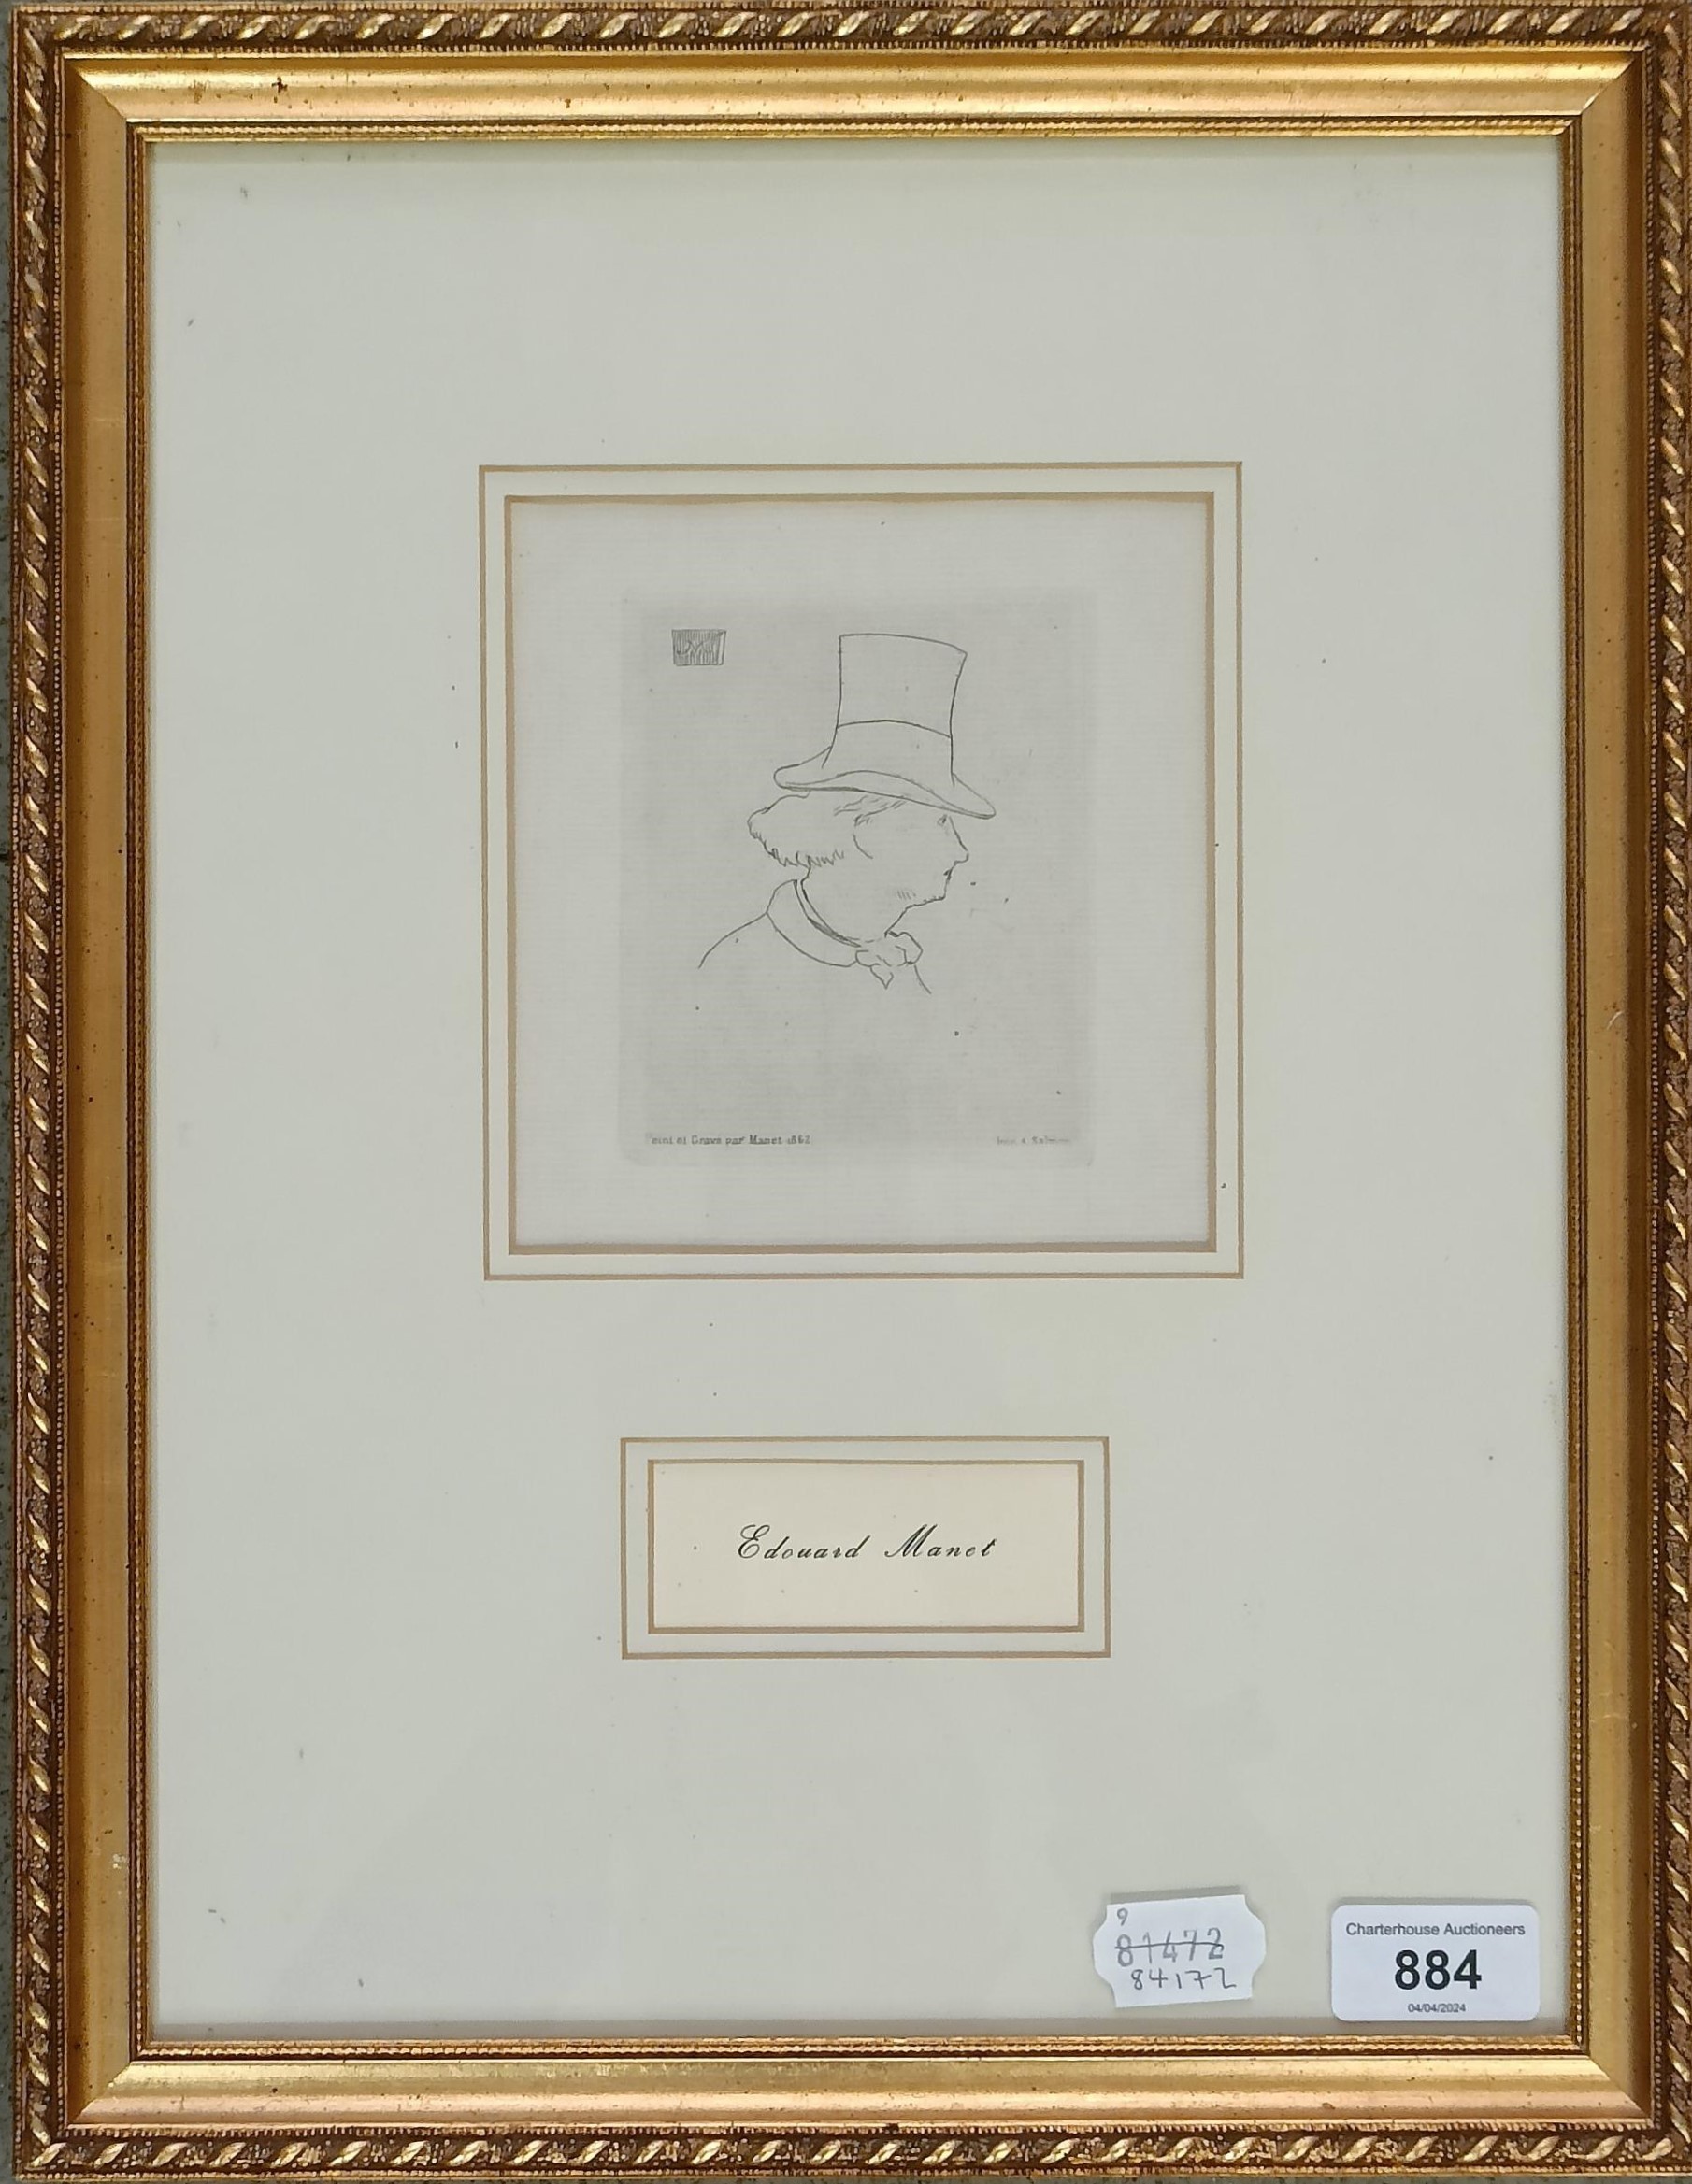 After Edouard Manet, a print of a gentleman, 14 x 13 cm